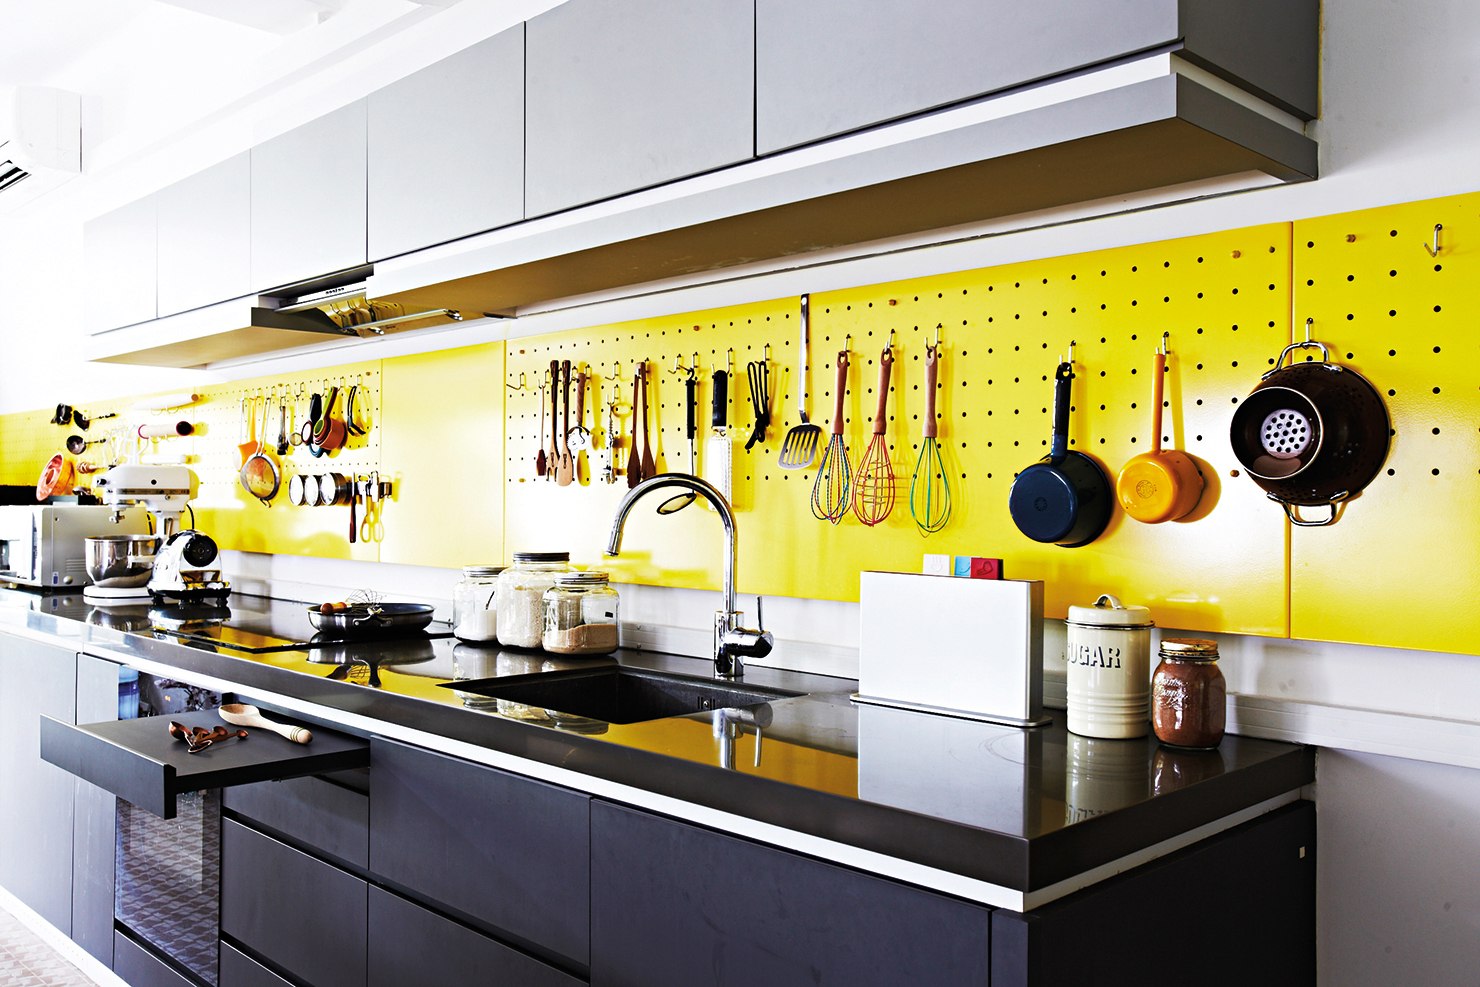 Закрытый фартук на кухне. Пегборд для кухни. Кухня с желтым фартуком. Перфорированная панель в интерьере кухни. Перфорированные панели для кухни.